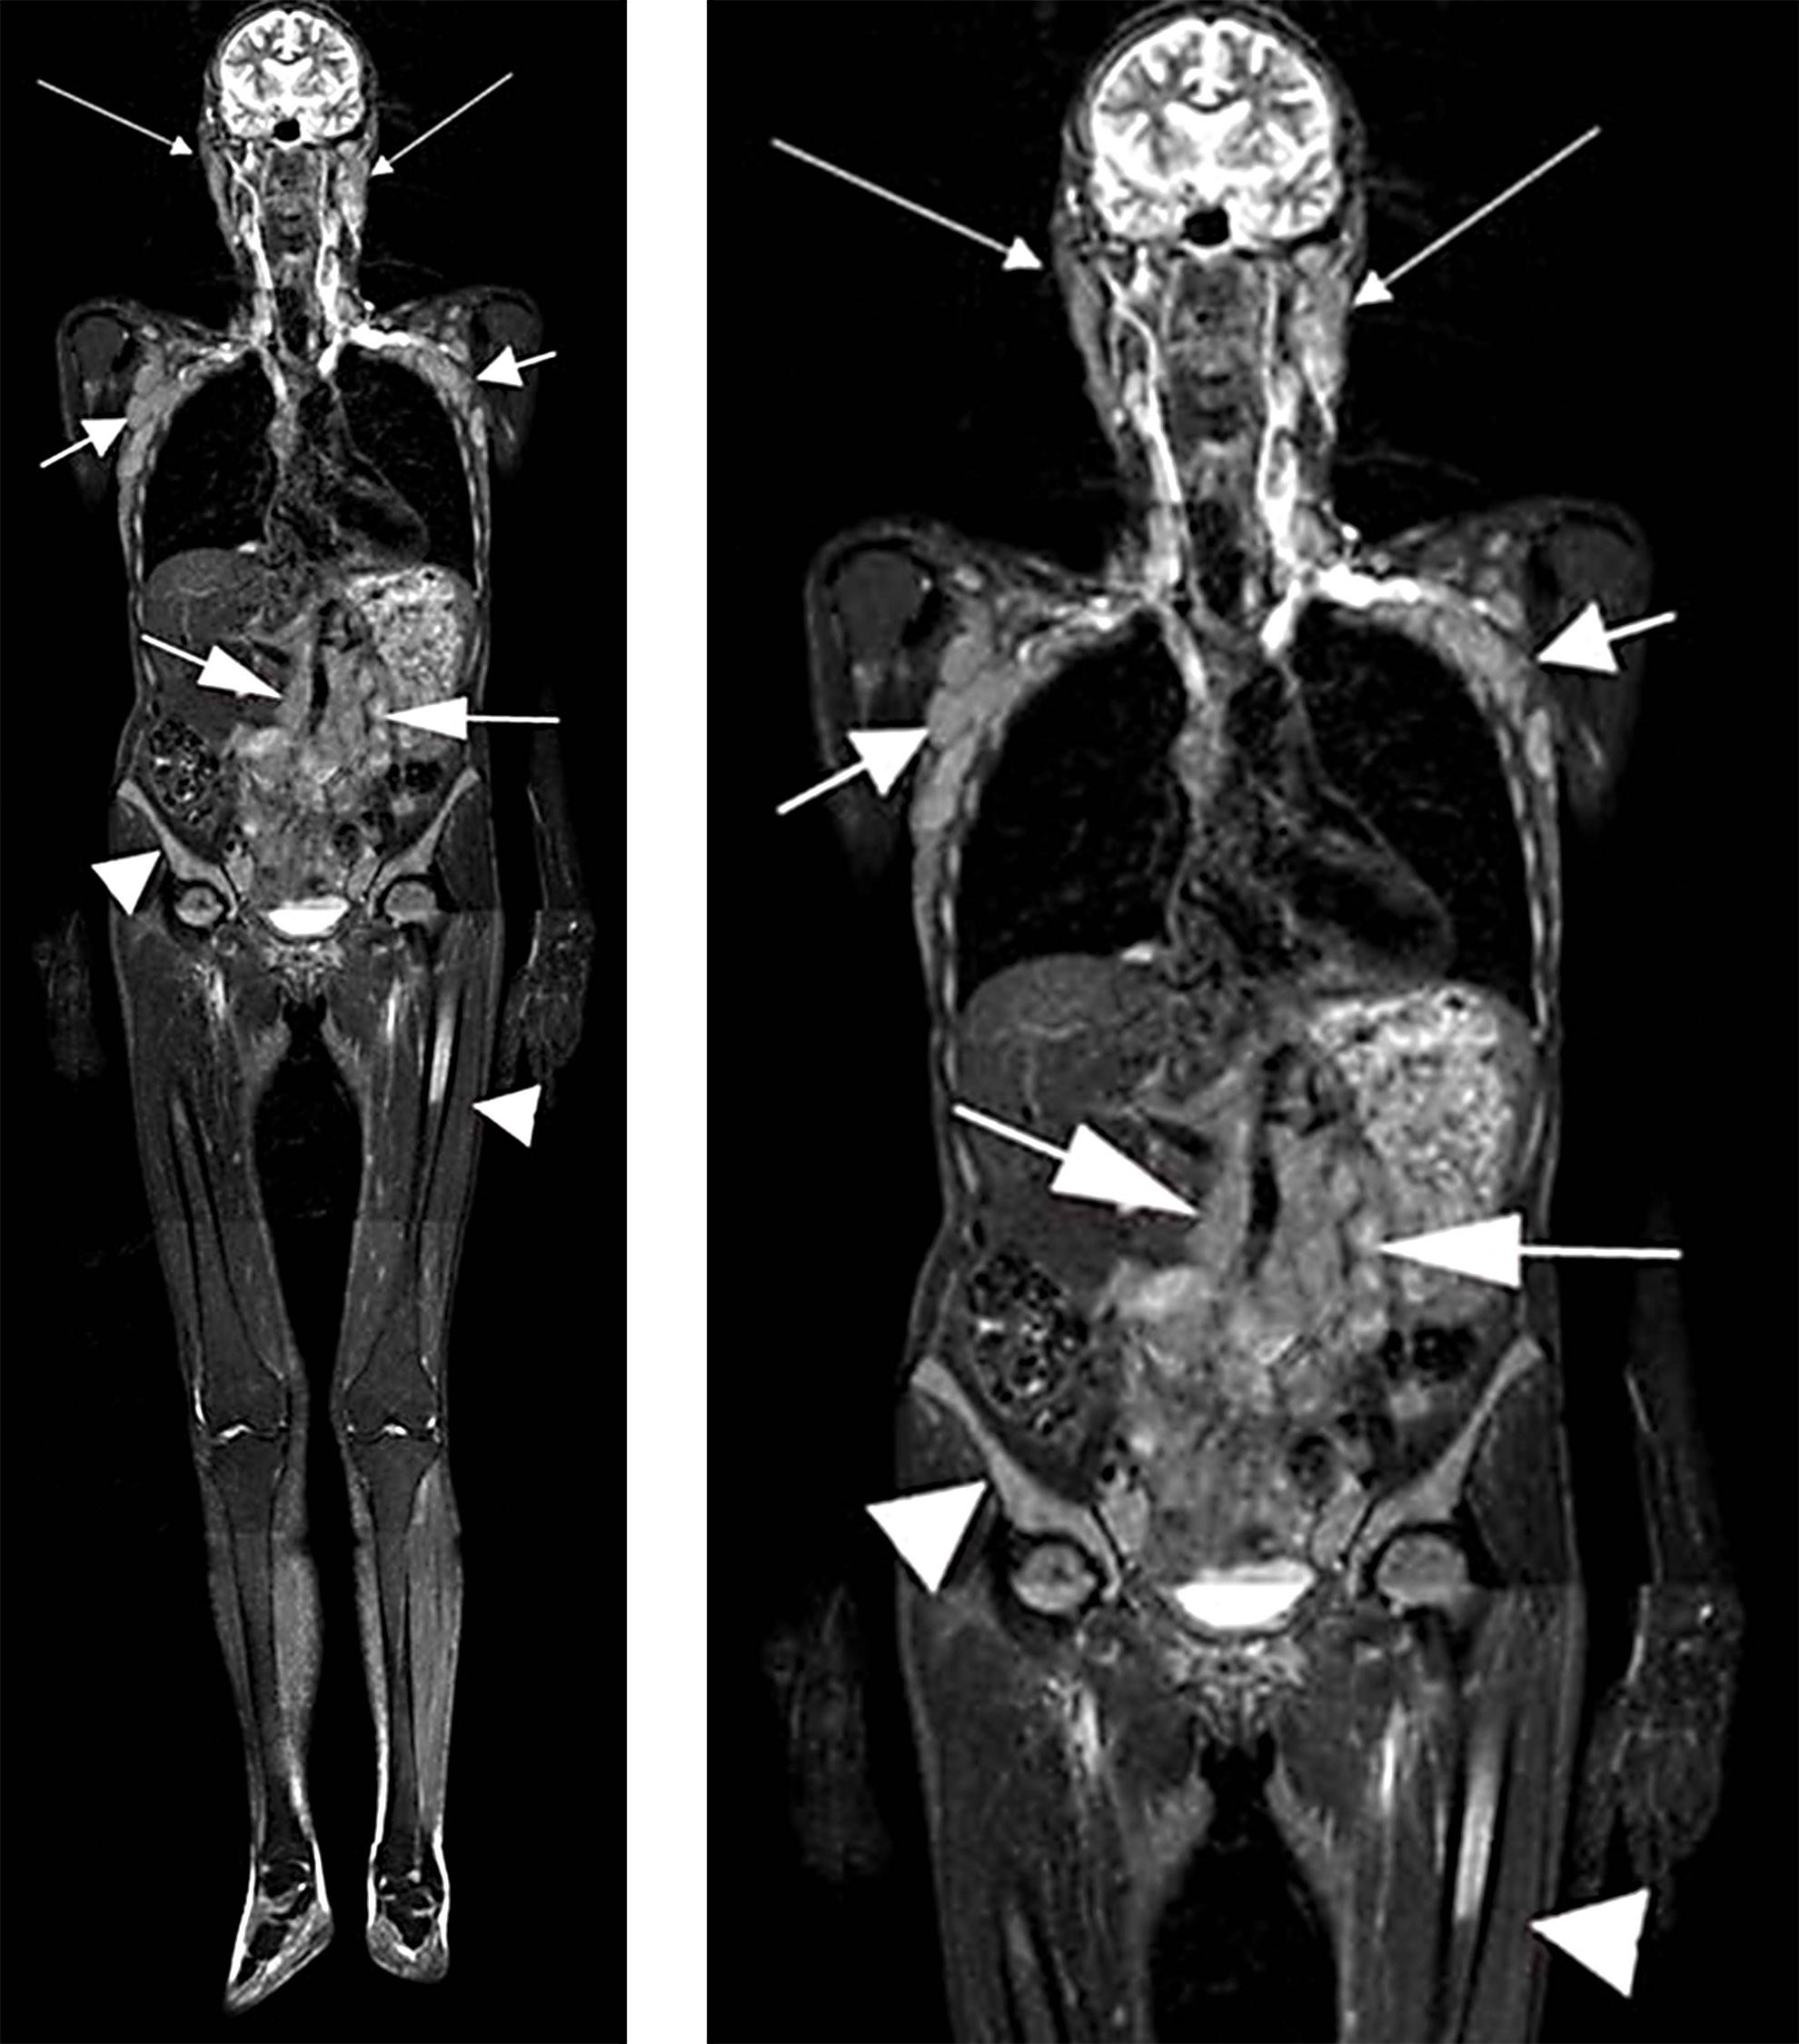 Разница кт и кт с контрастом. Мрт кт рентген. Компьютерная томография и магнитно-резонансная томография. Магнитно-резонансная томография мягких тканей (1 зона) это. Магниторезонансная томография (мрт).